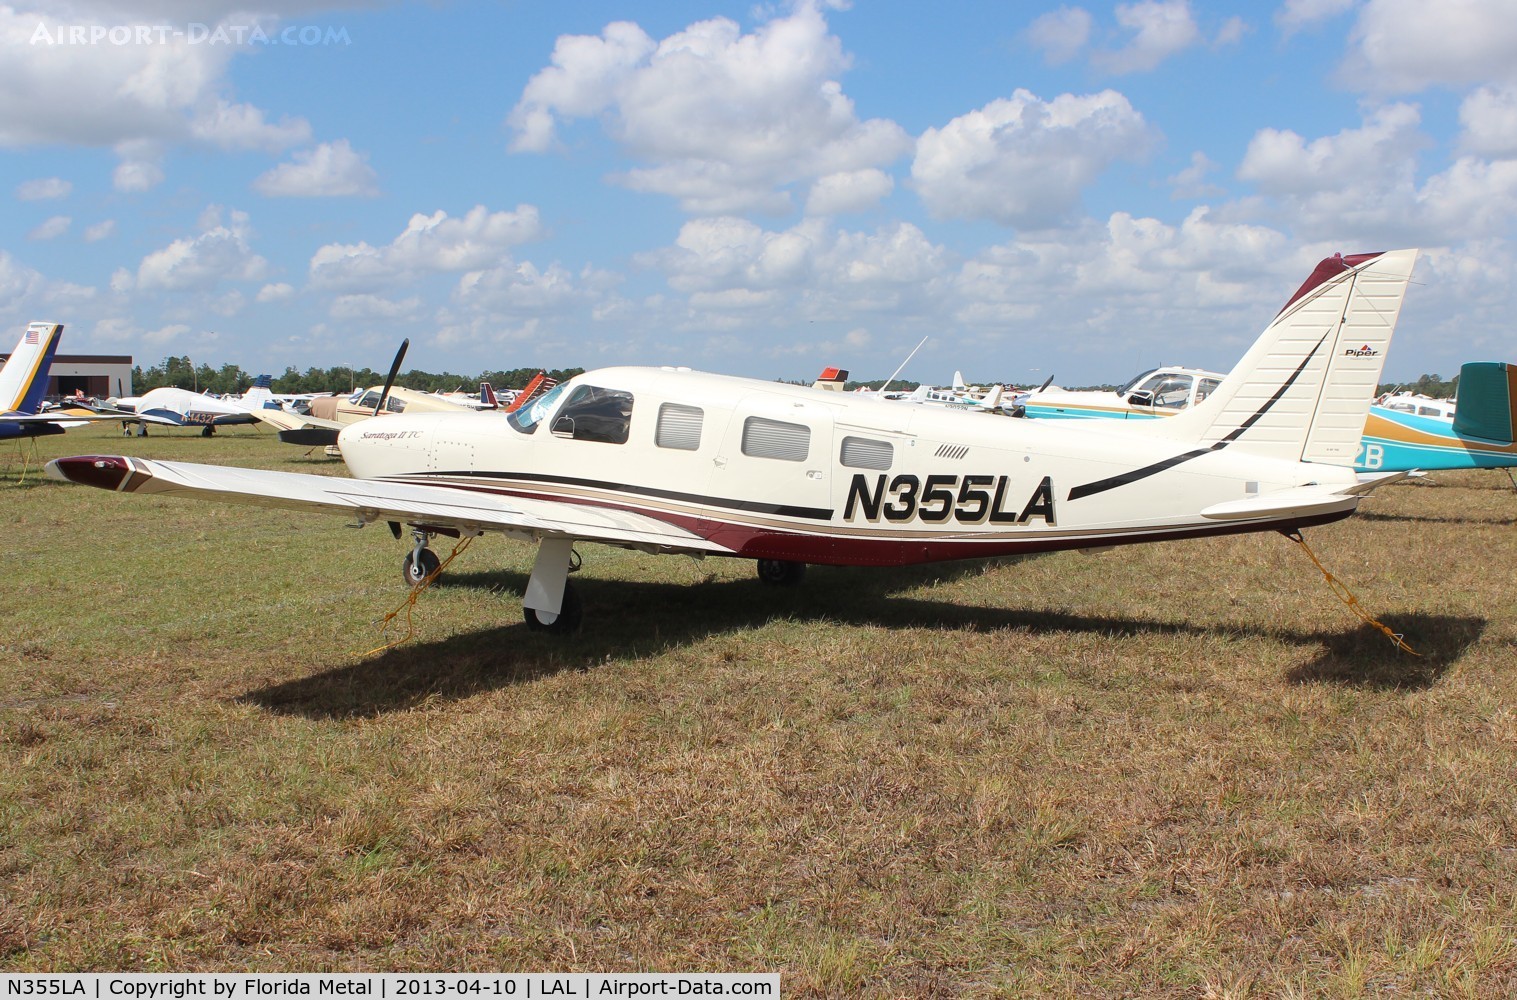 N355LA, 2007 Piper PA-32R-301T Turbo Saratoga C/N 3257472, PA-32-301T